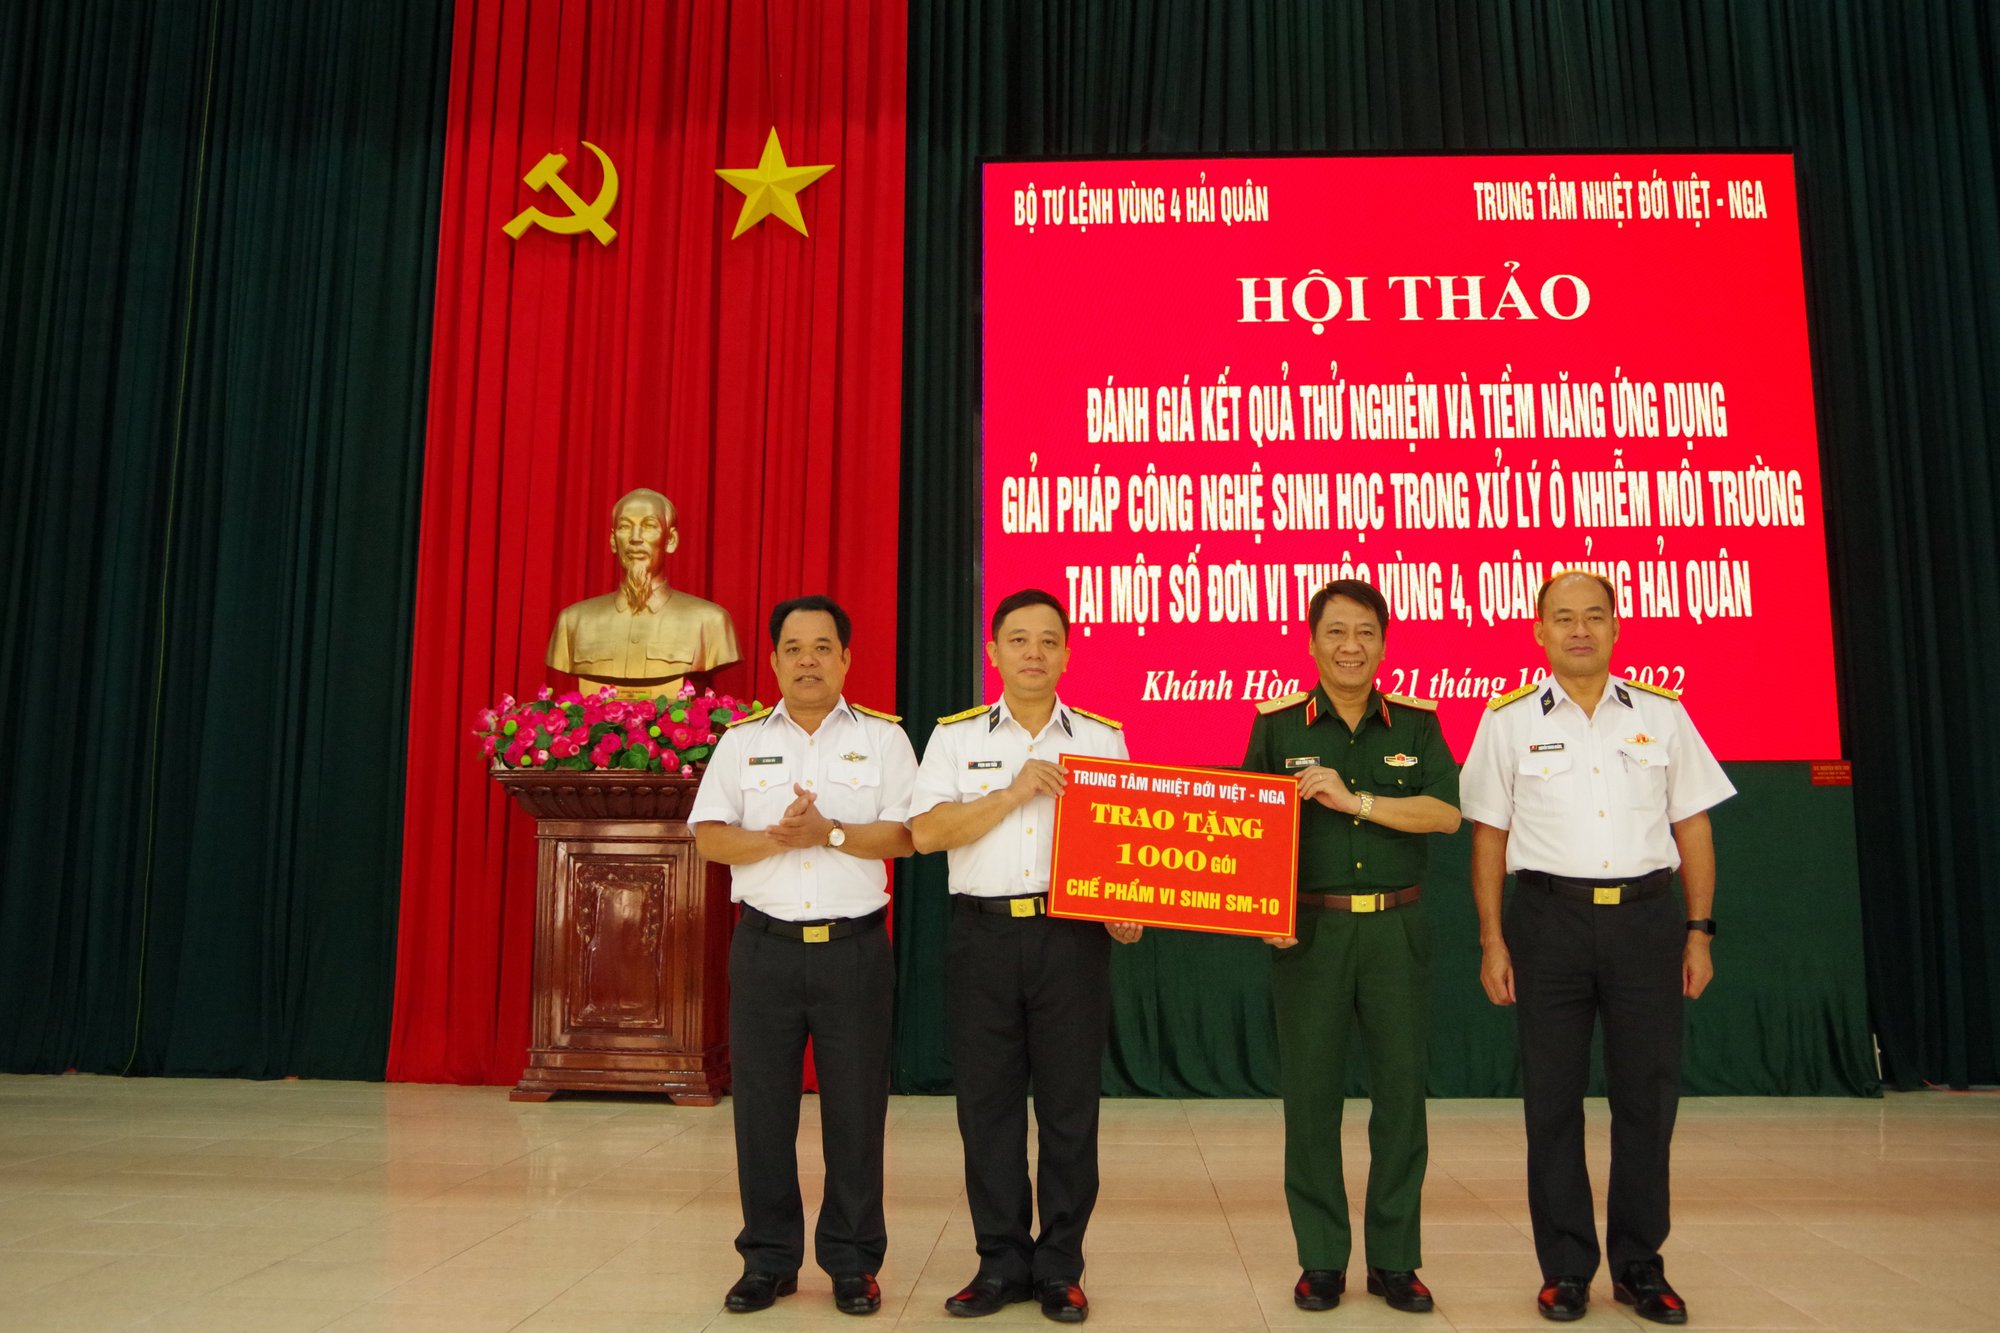 Trung tâm nhiệt đới Việt - Nga trao tặng 1.000 gói chế phẩm vi sinh  - Ảnh 1.